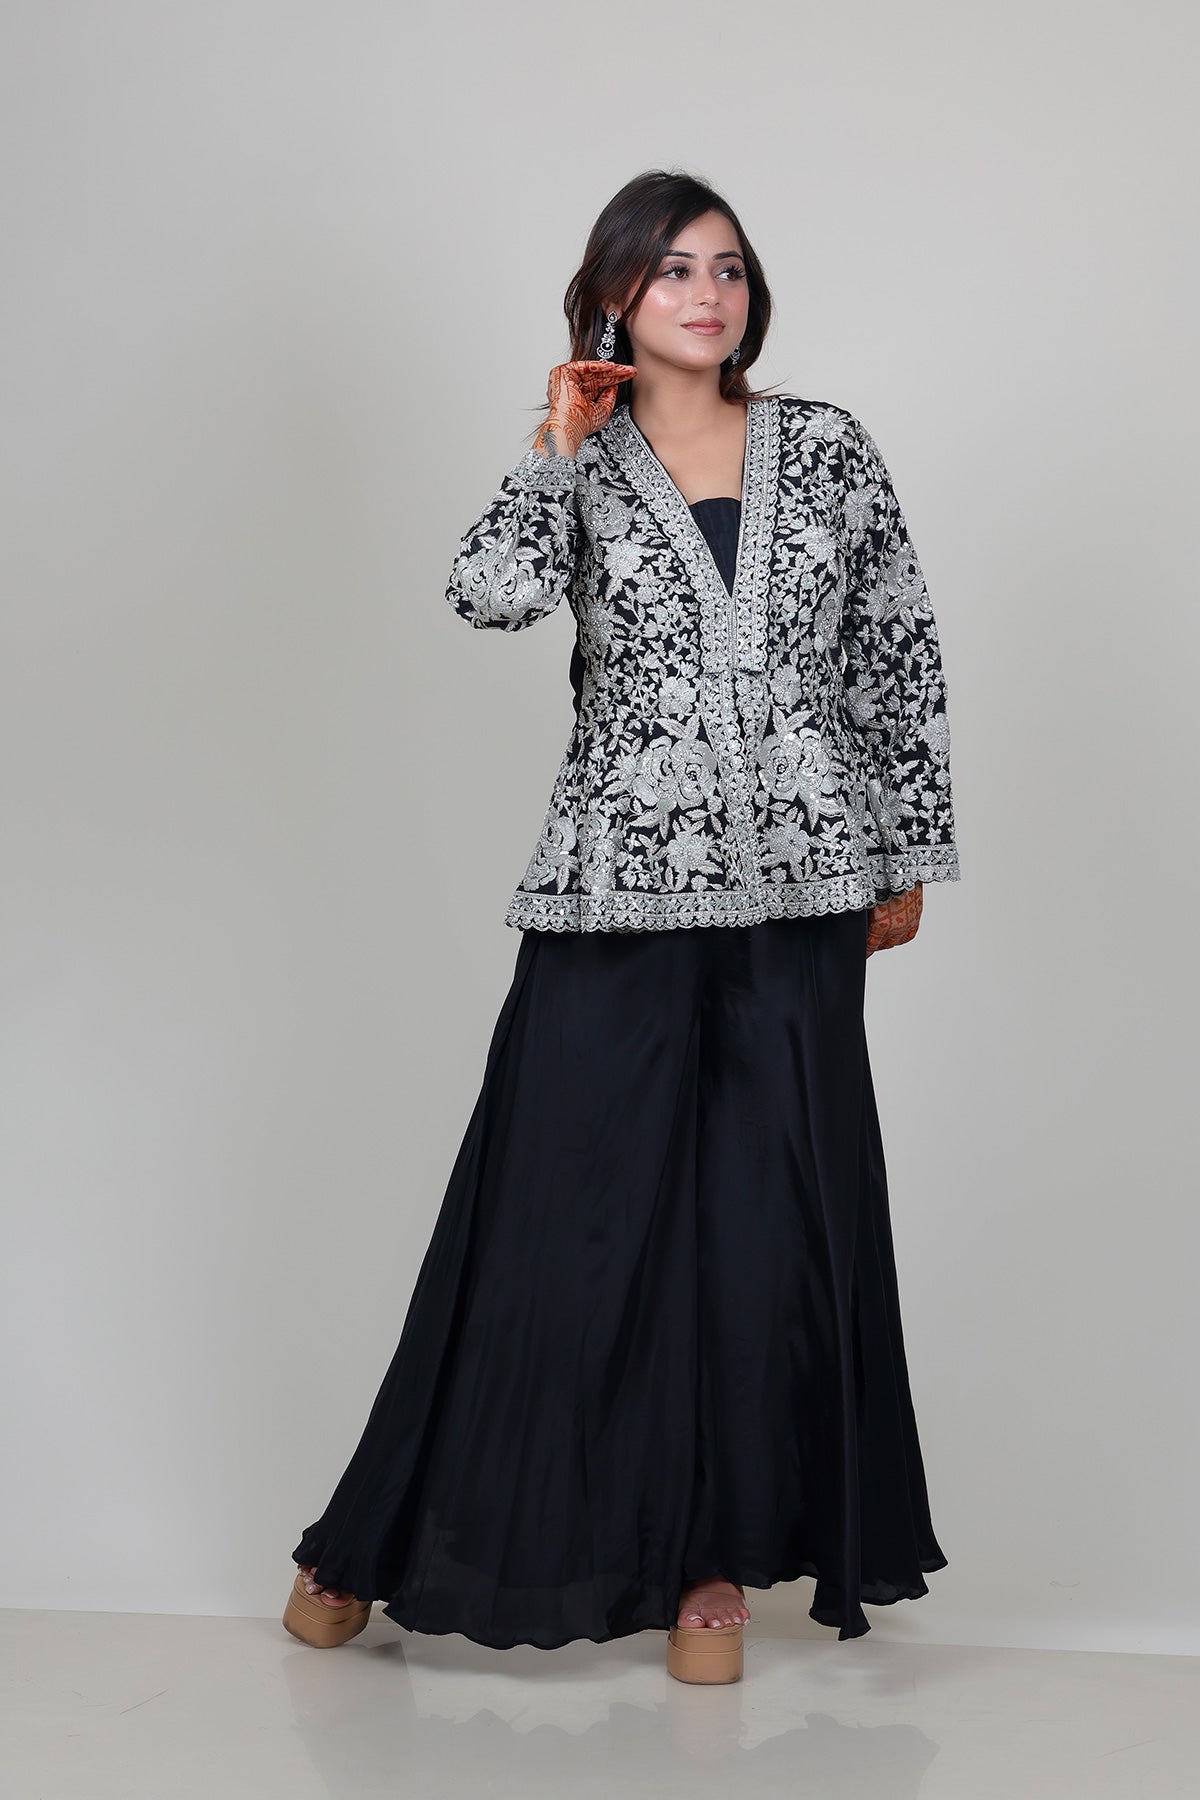 Black Sharara Suit with peplum Top